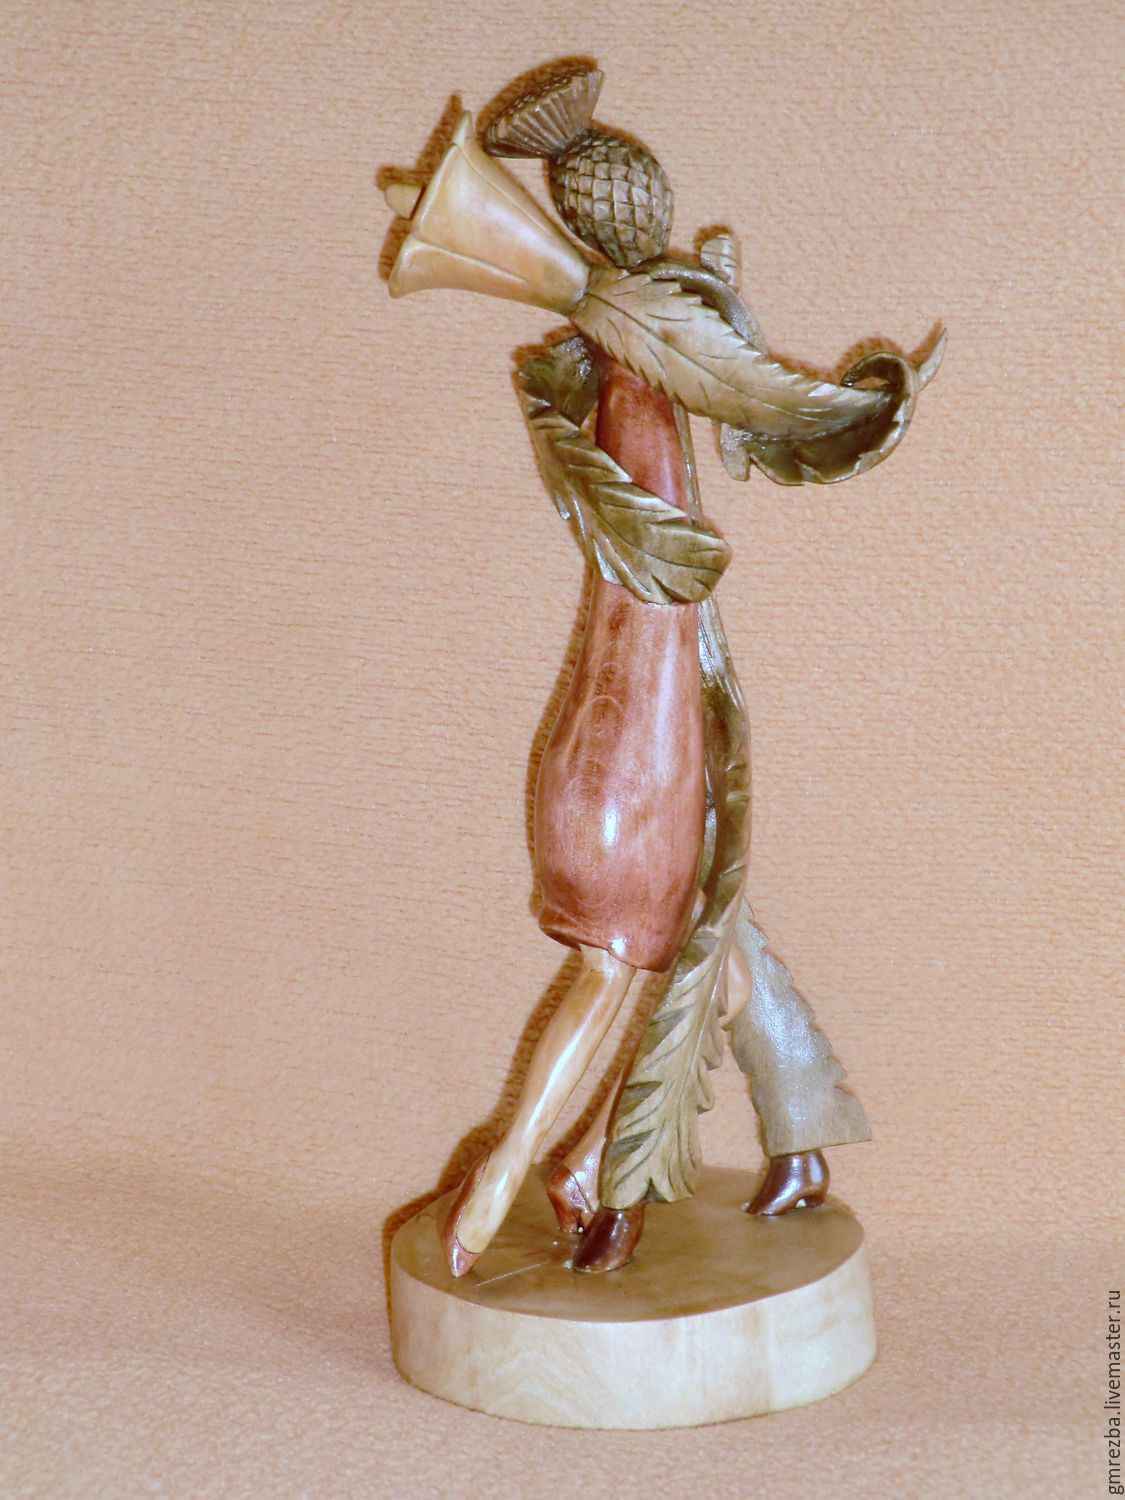 Статуэтка из дерева "Танго цветков" Художественная резьба